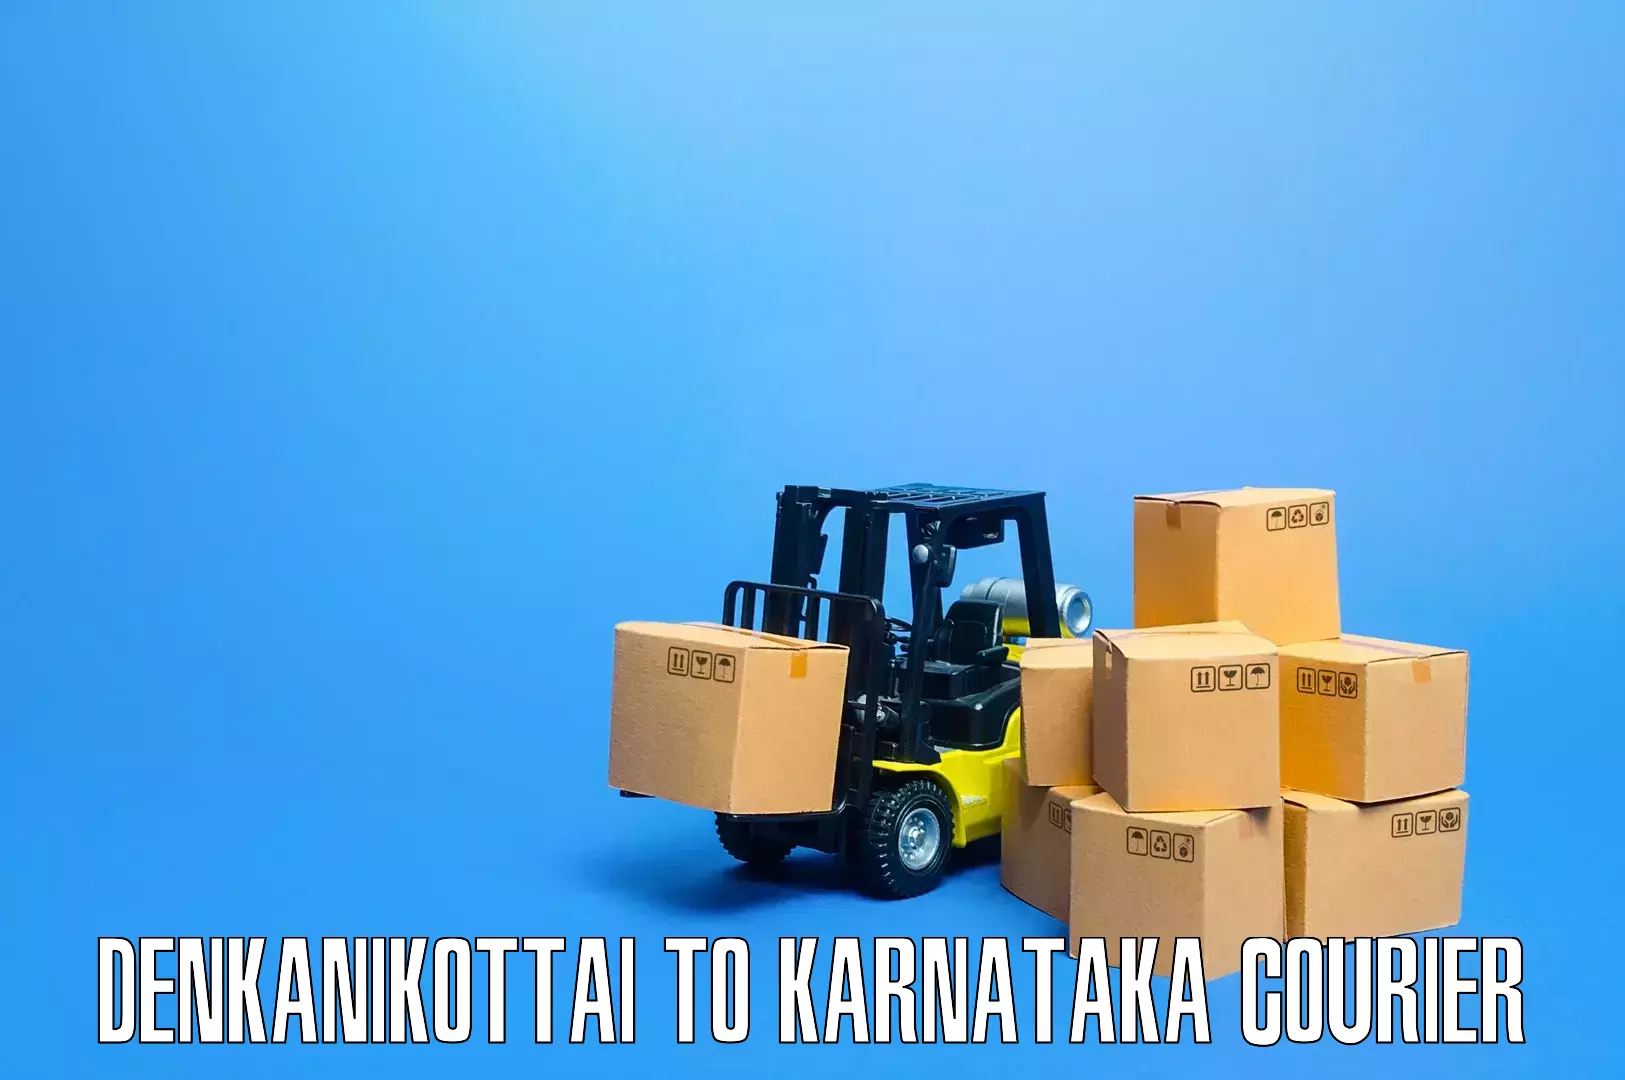 Specialized furniture movers Denkanikottai to Mangalore Port